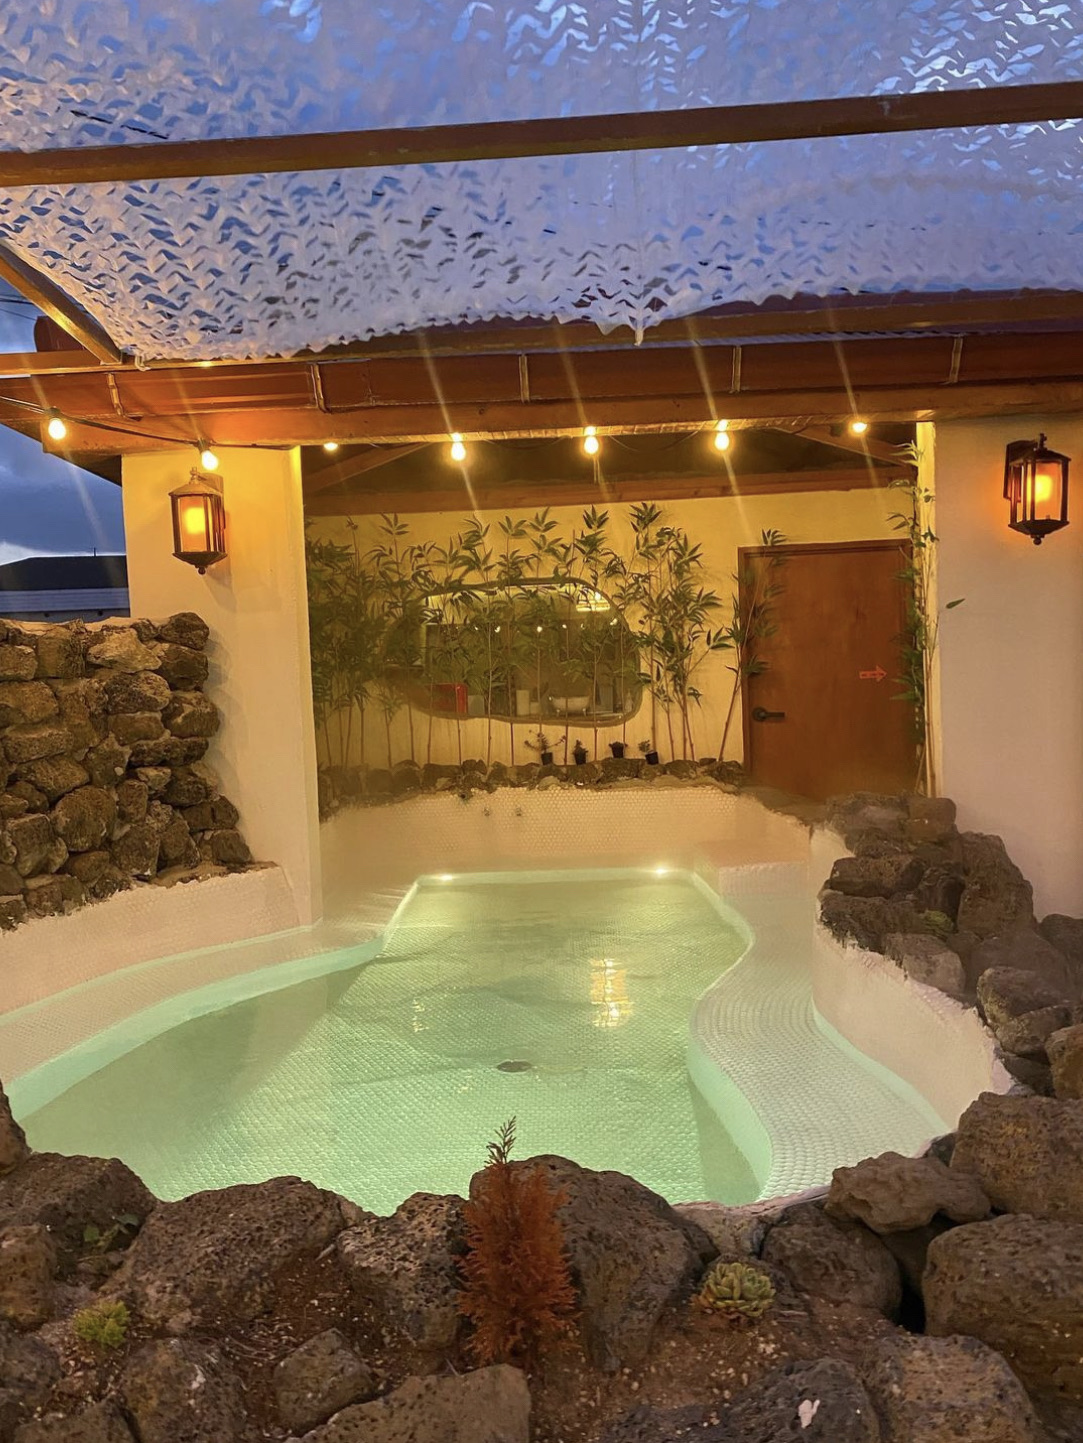 拥有济州天然石材的户外露天浴池的独栋感性宿舍